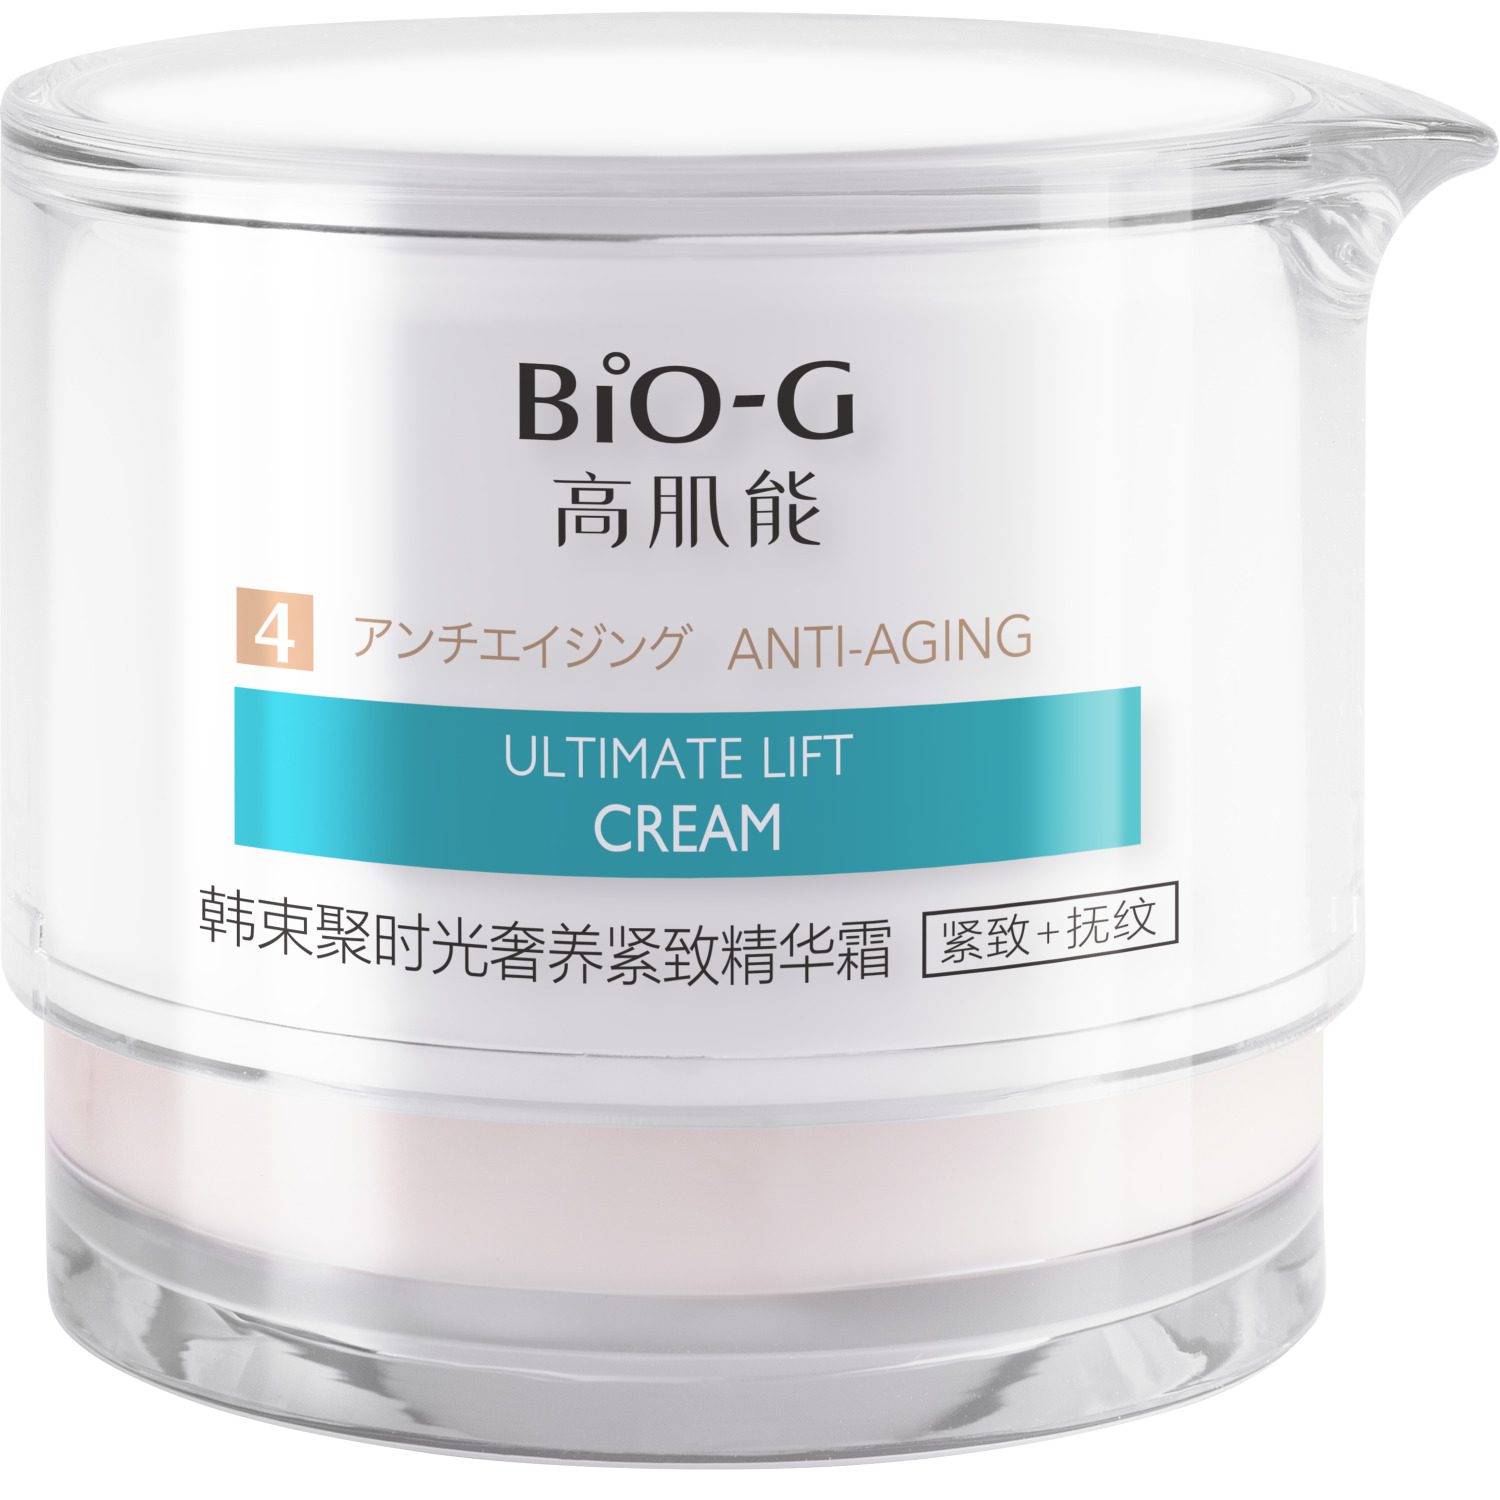 Крем для лица Bio-G ULTIMATE LIFT anti-age омолаживающий, увлажняющий 50 г крем для лица beautydose anti age с маслом виноградных косточек 100 мл